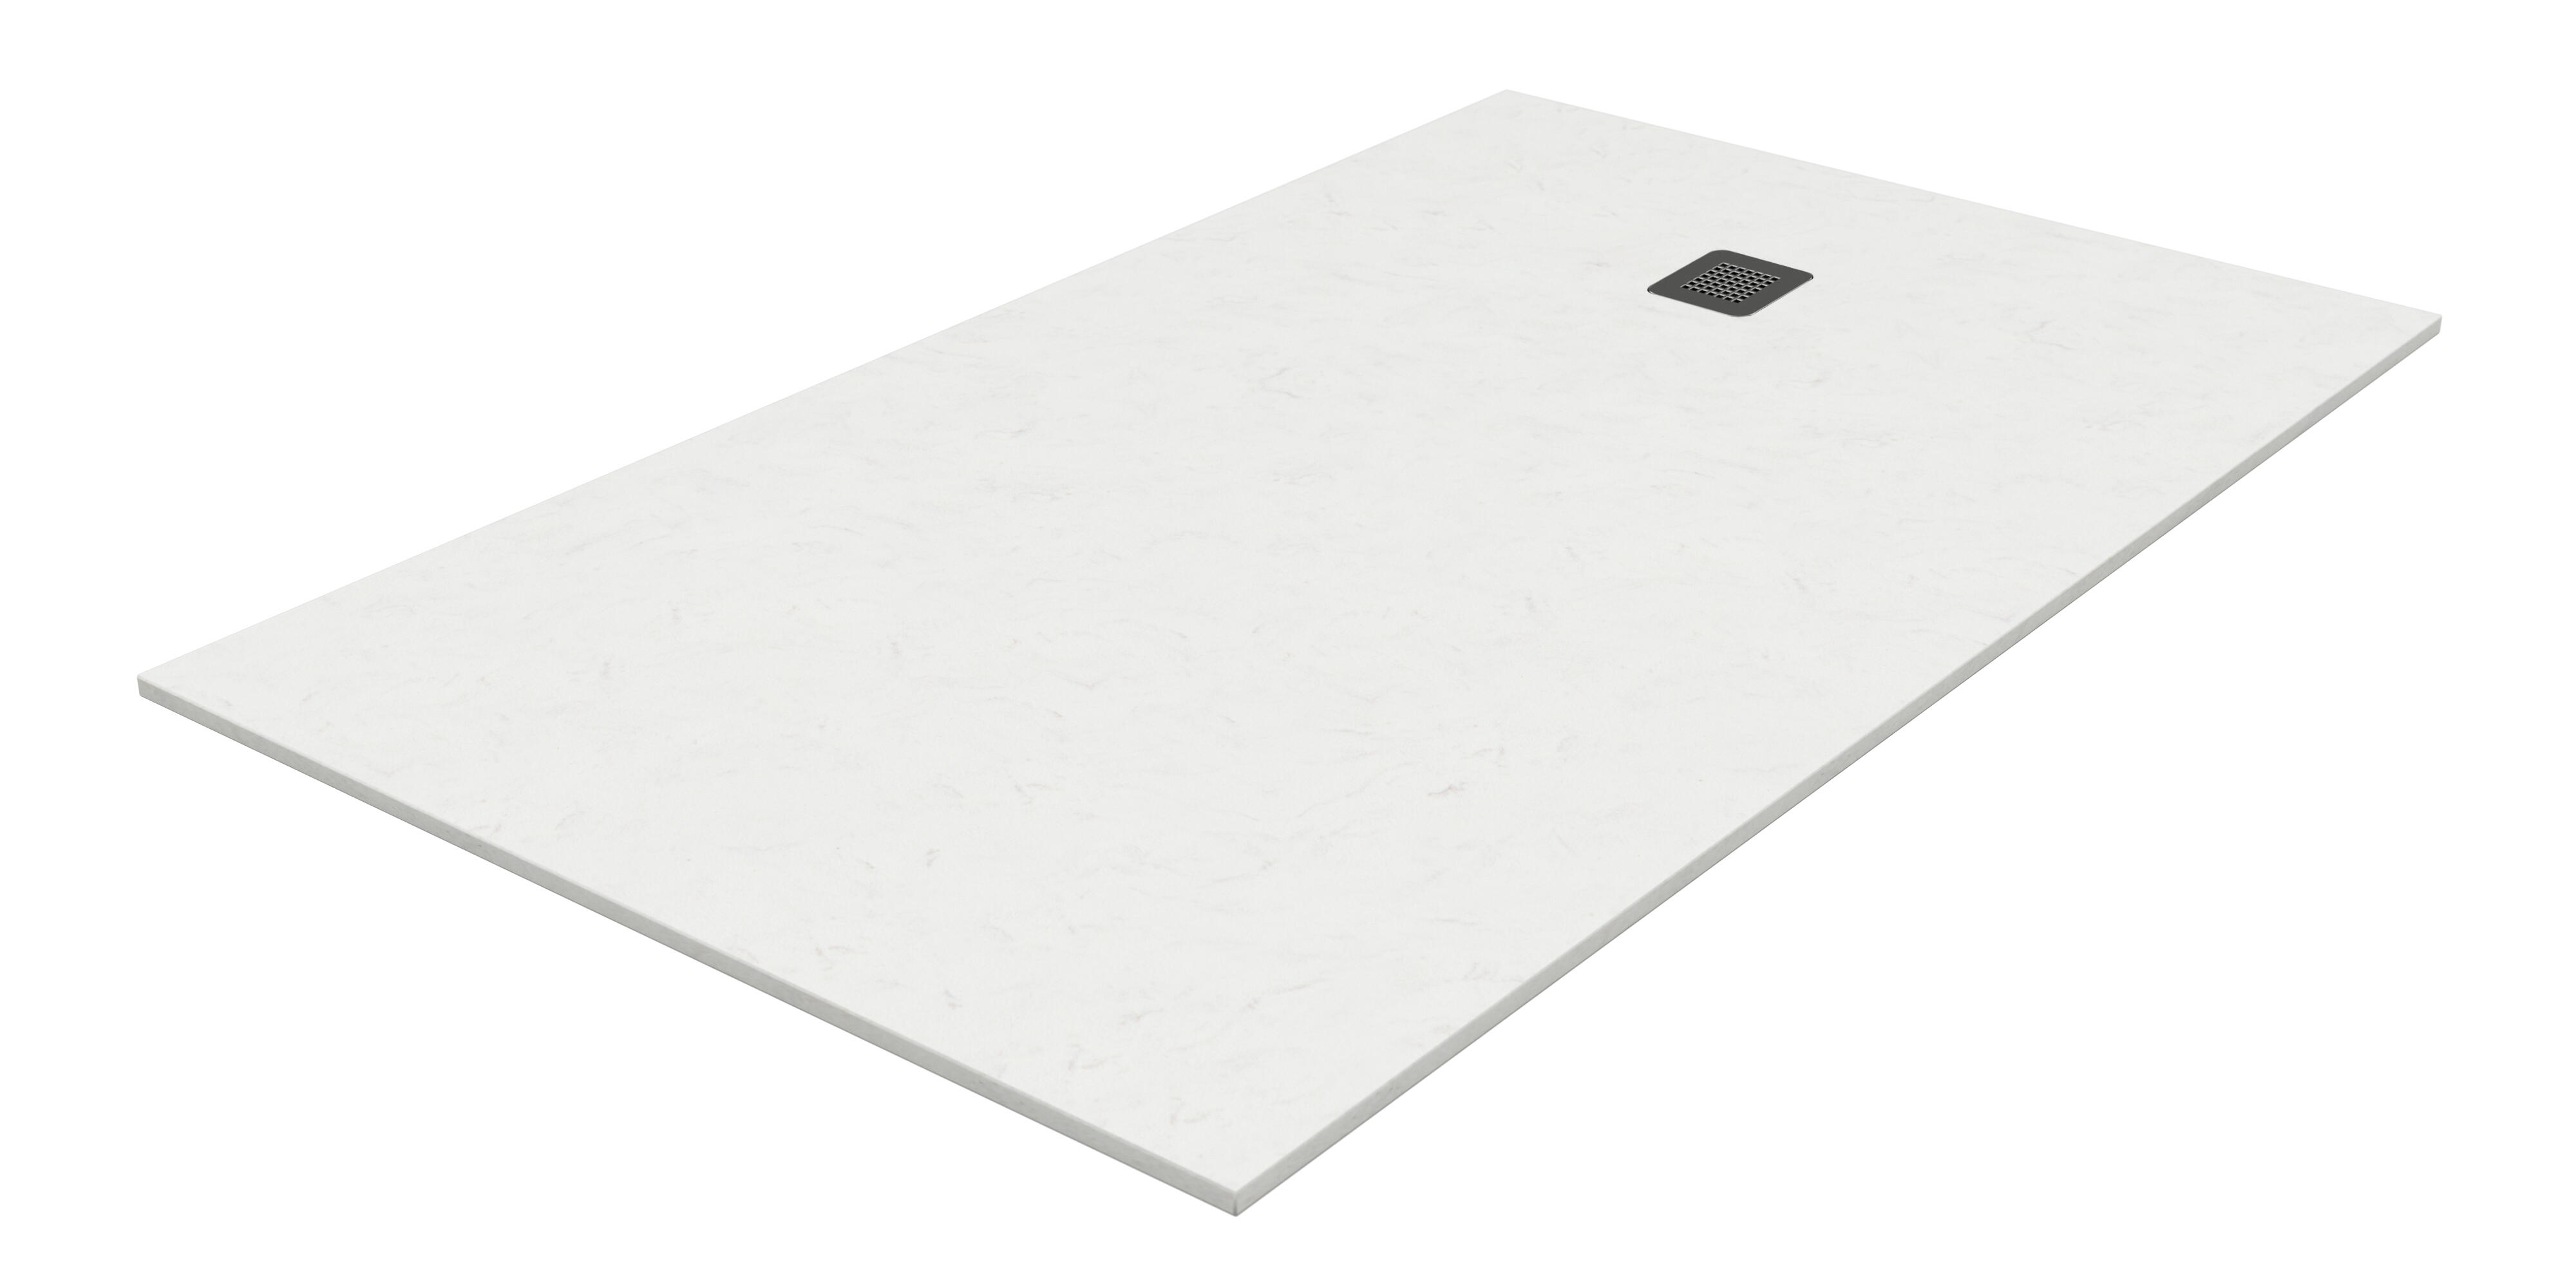 Plato de ducha kioto 140x70 cm blanco